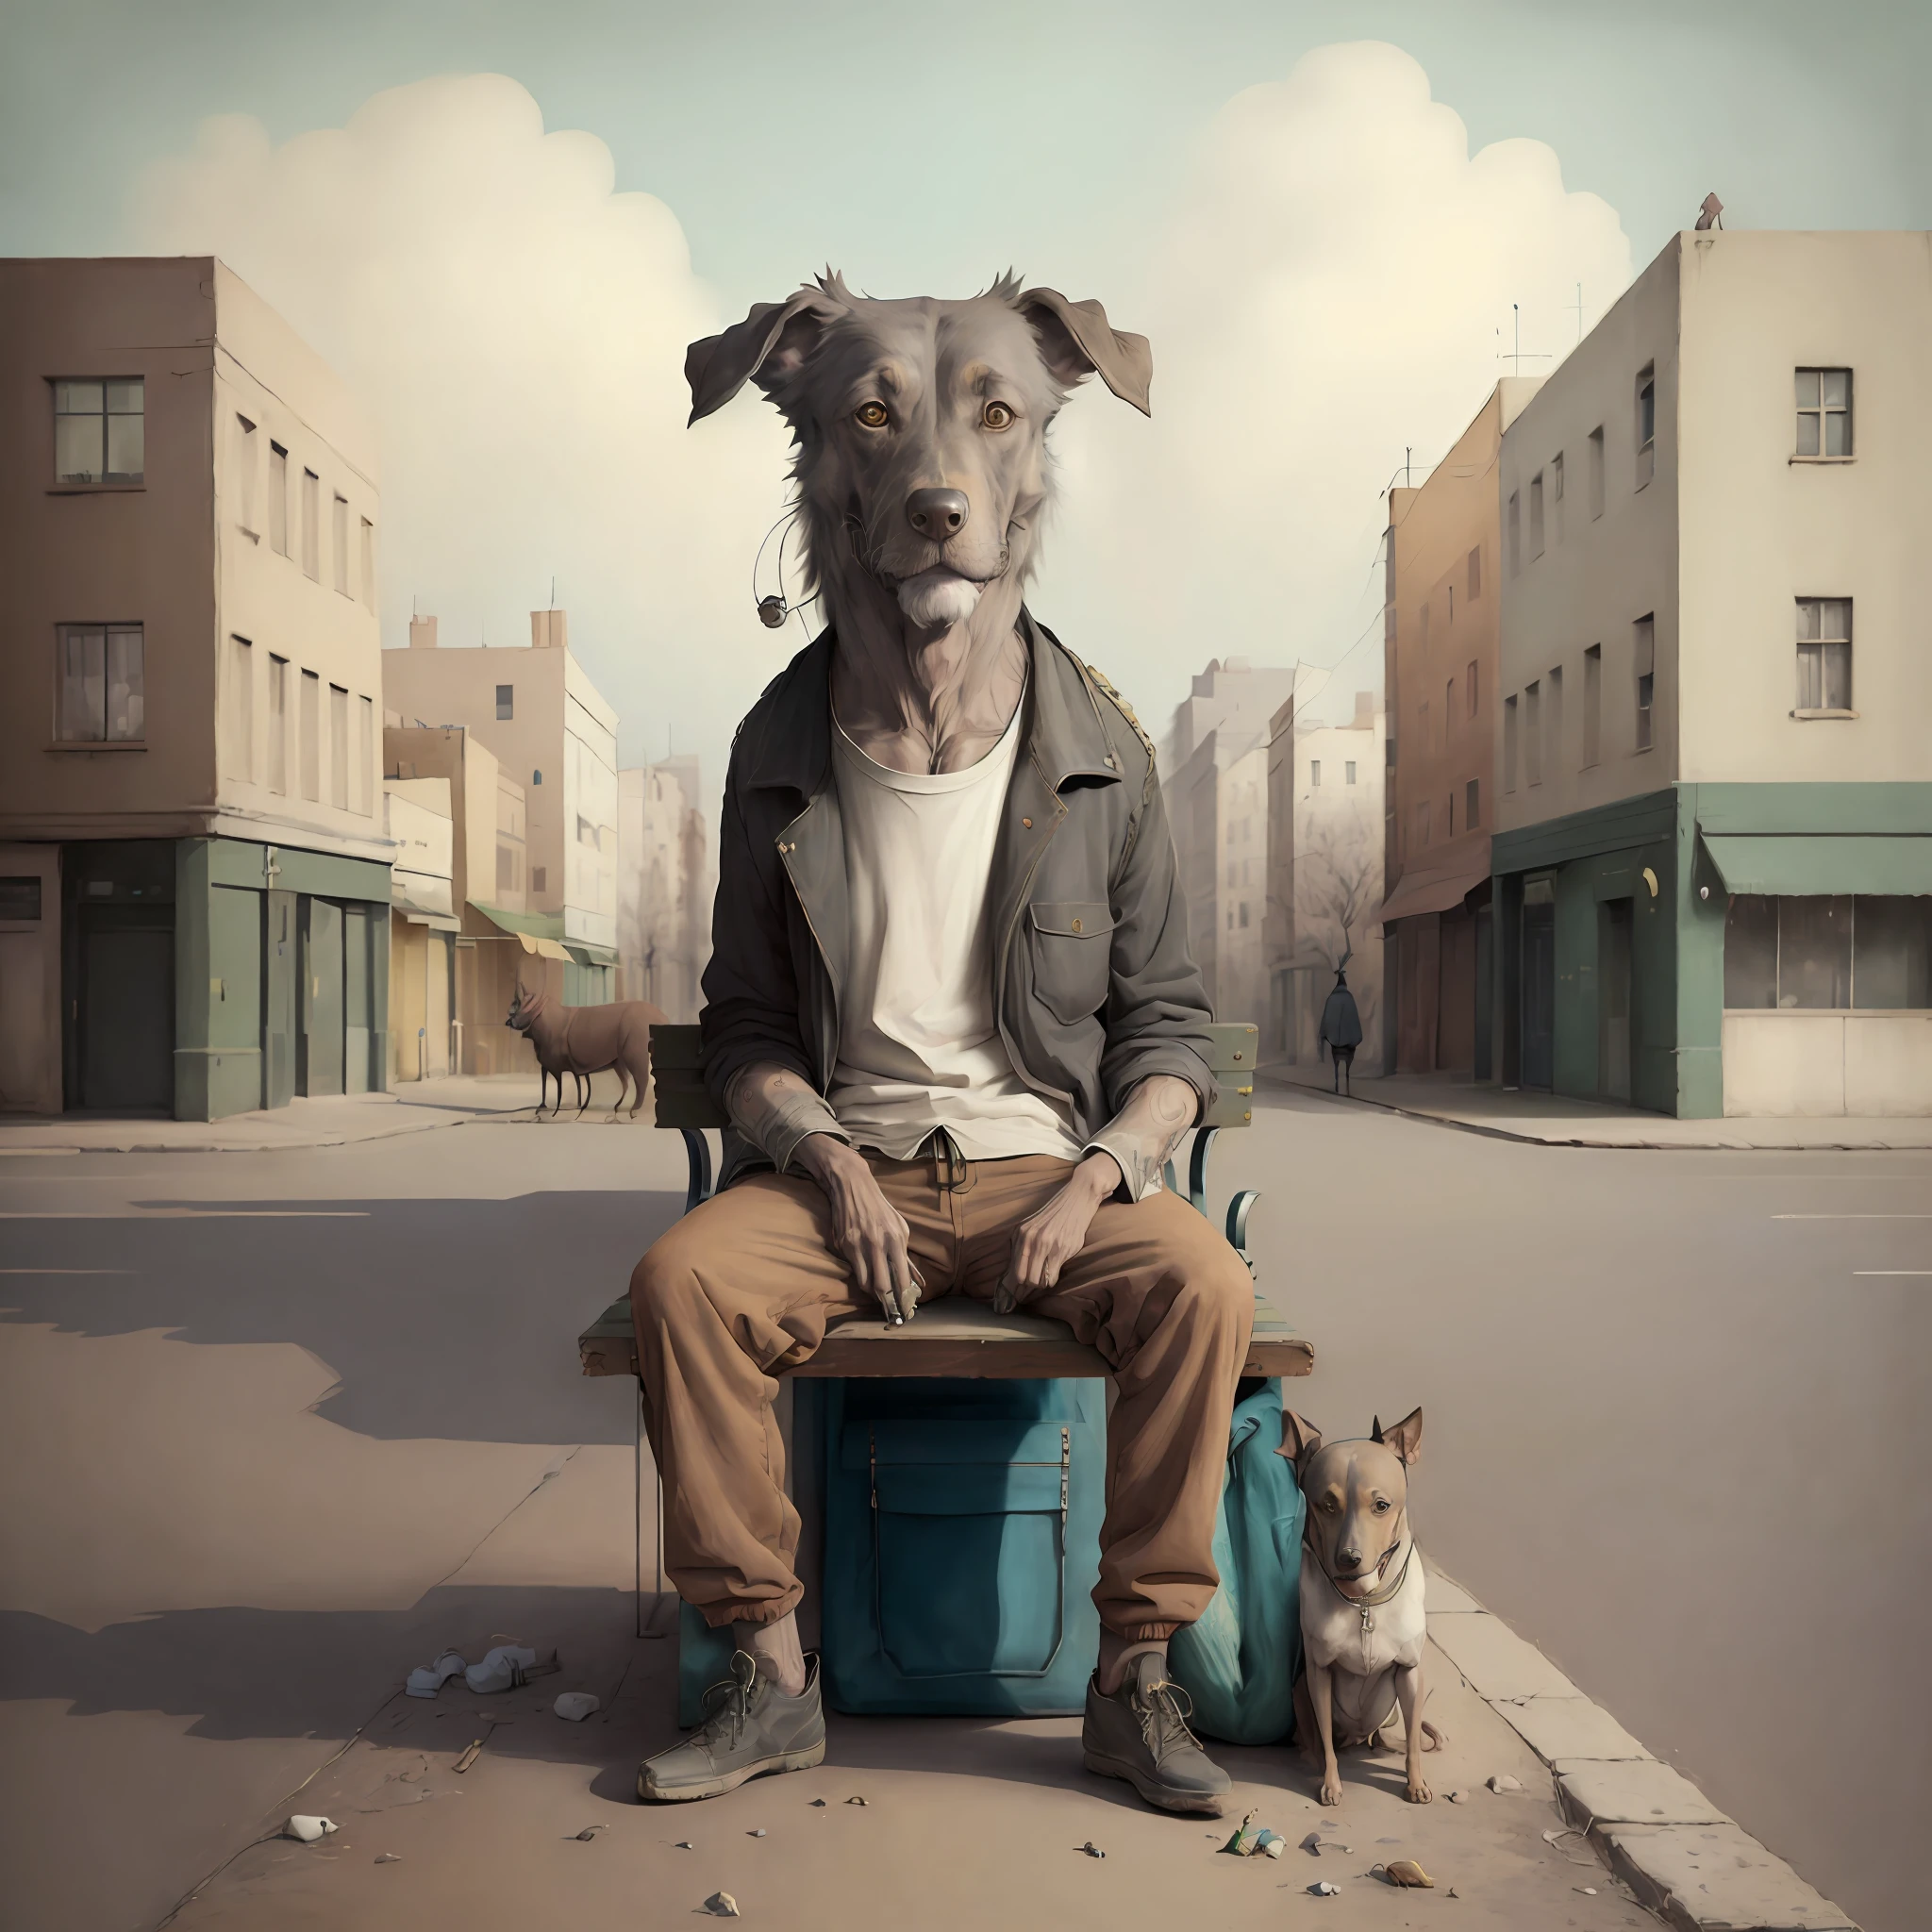 ((((très détaillé))))surréalisme, Minimalisme,Un sans-abri assis sur un banc,Un chien est assis à côté de lui